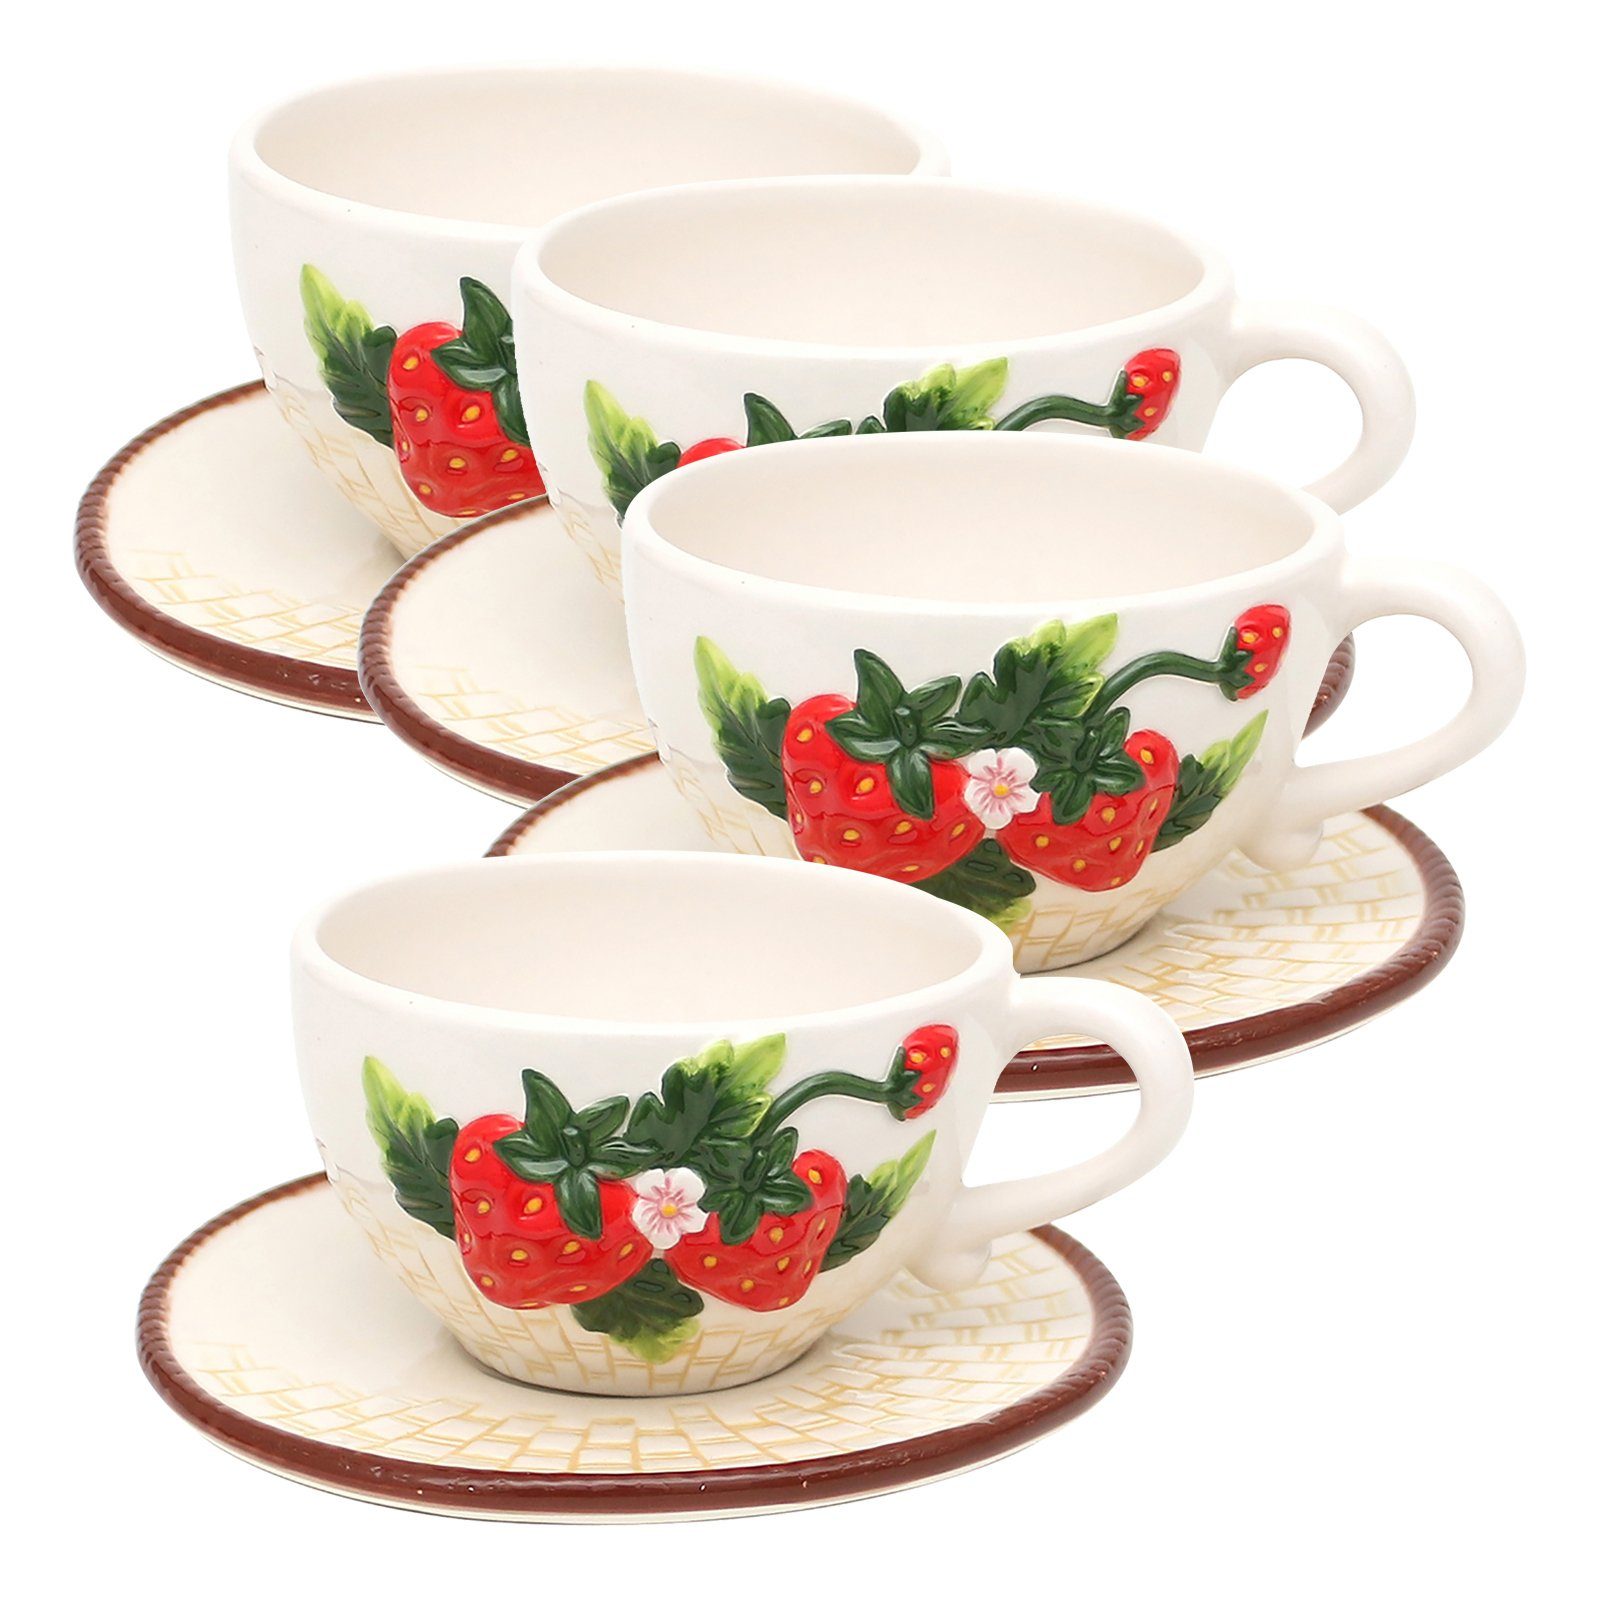 mit Teetasse Keramik, Untertasse Neuetischkultur 4-teilig, Tassen-Set Kaffeetasse Tasse Keramik Erdbeere,